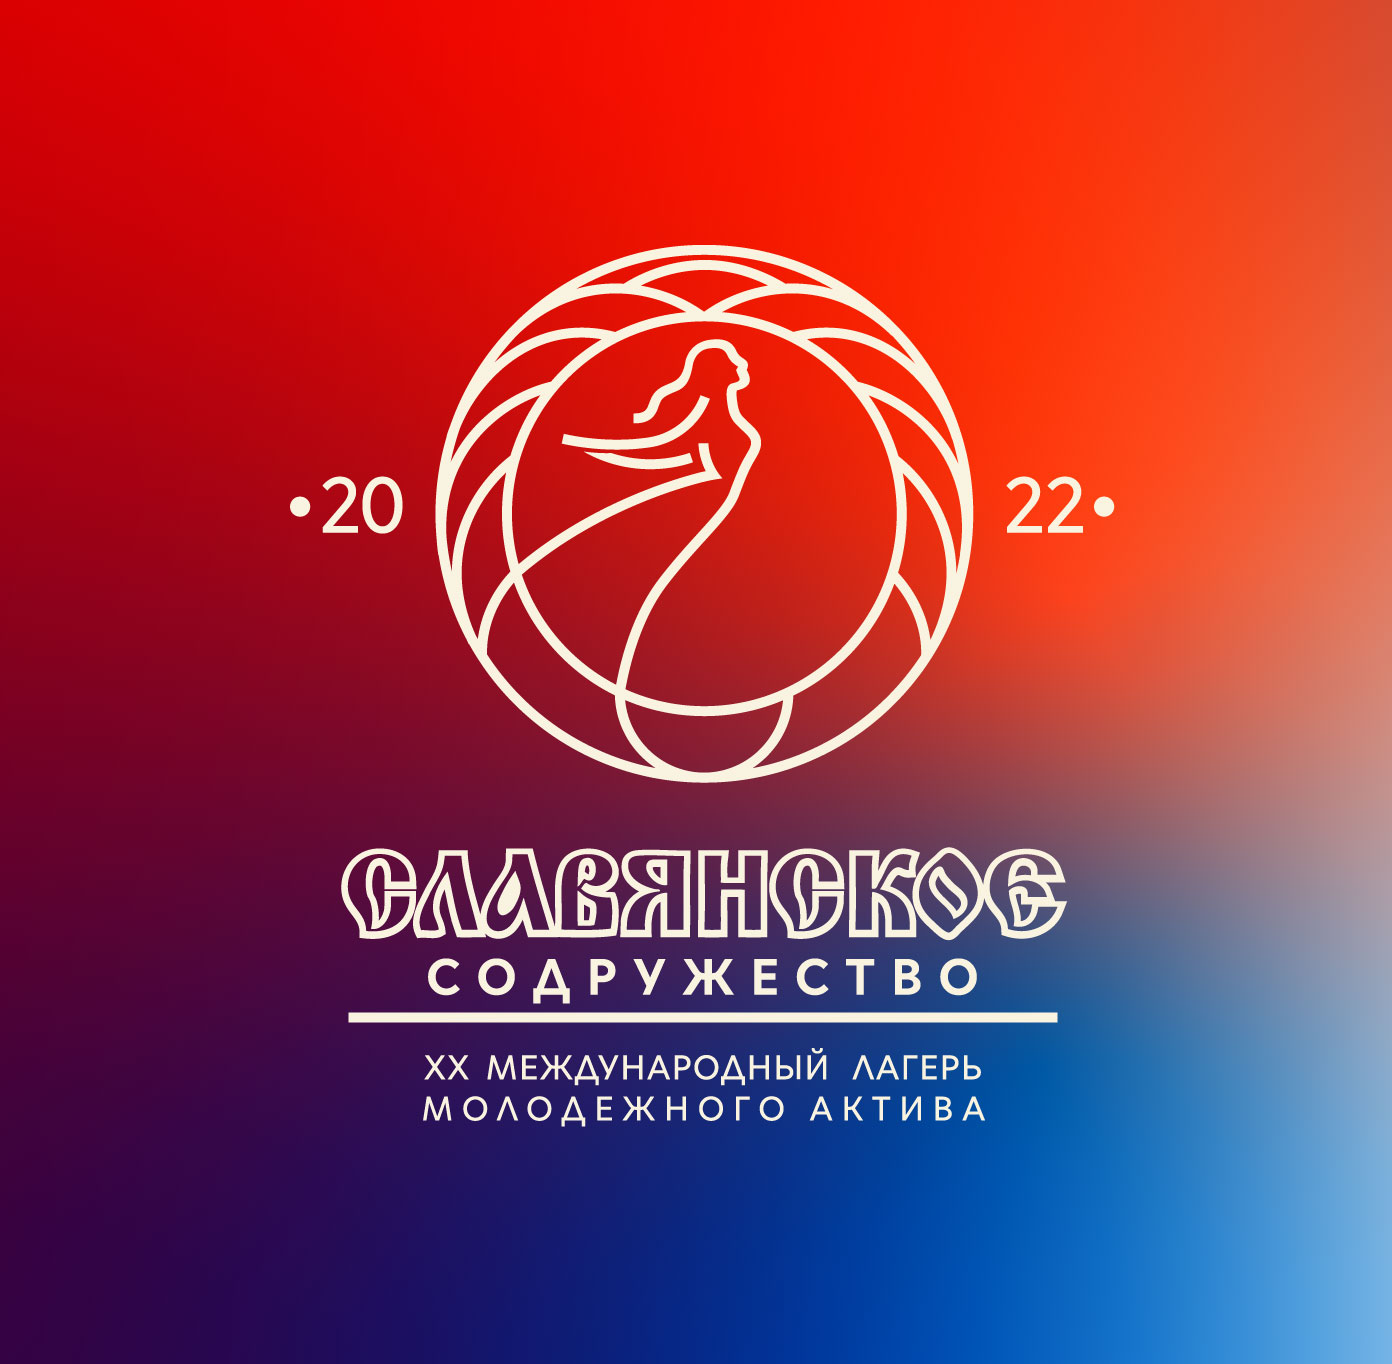 Логотип Славянка 2022